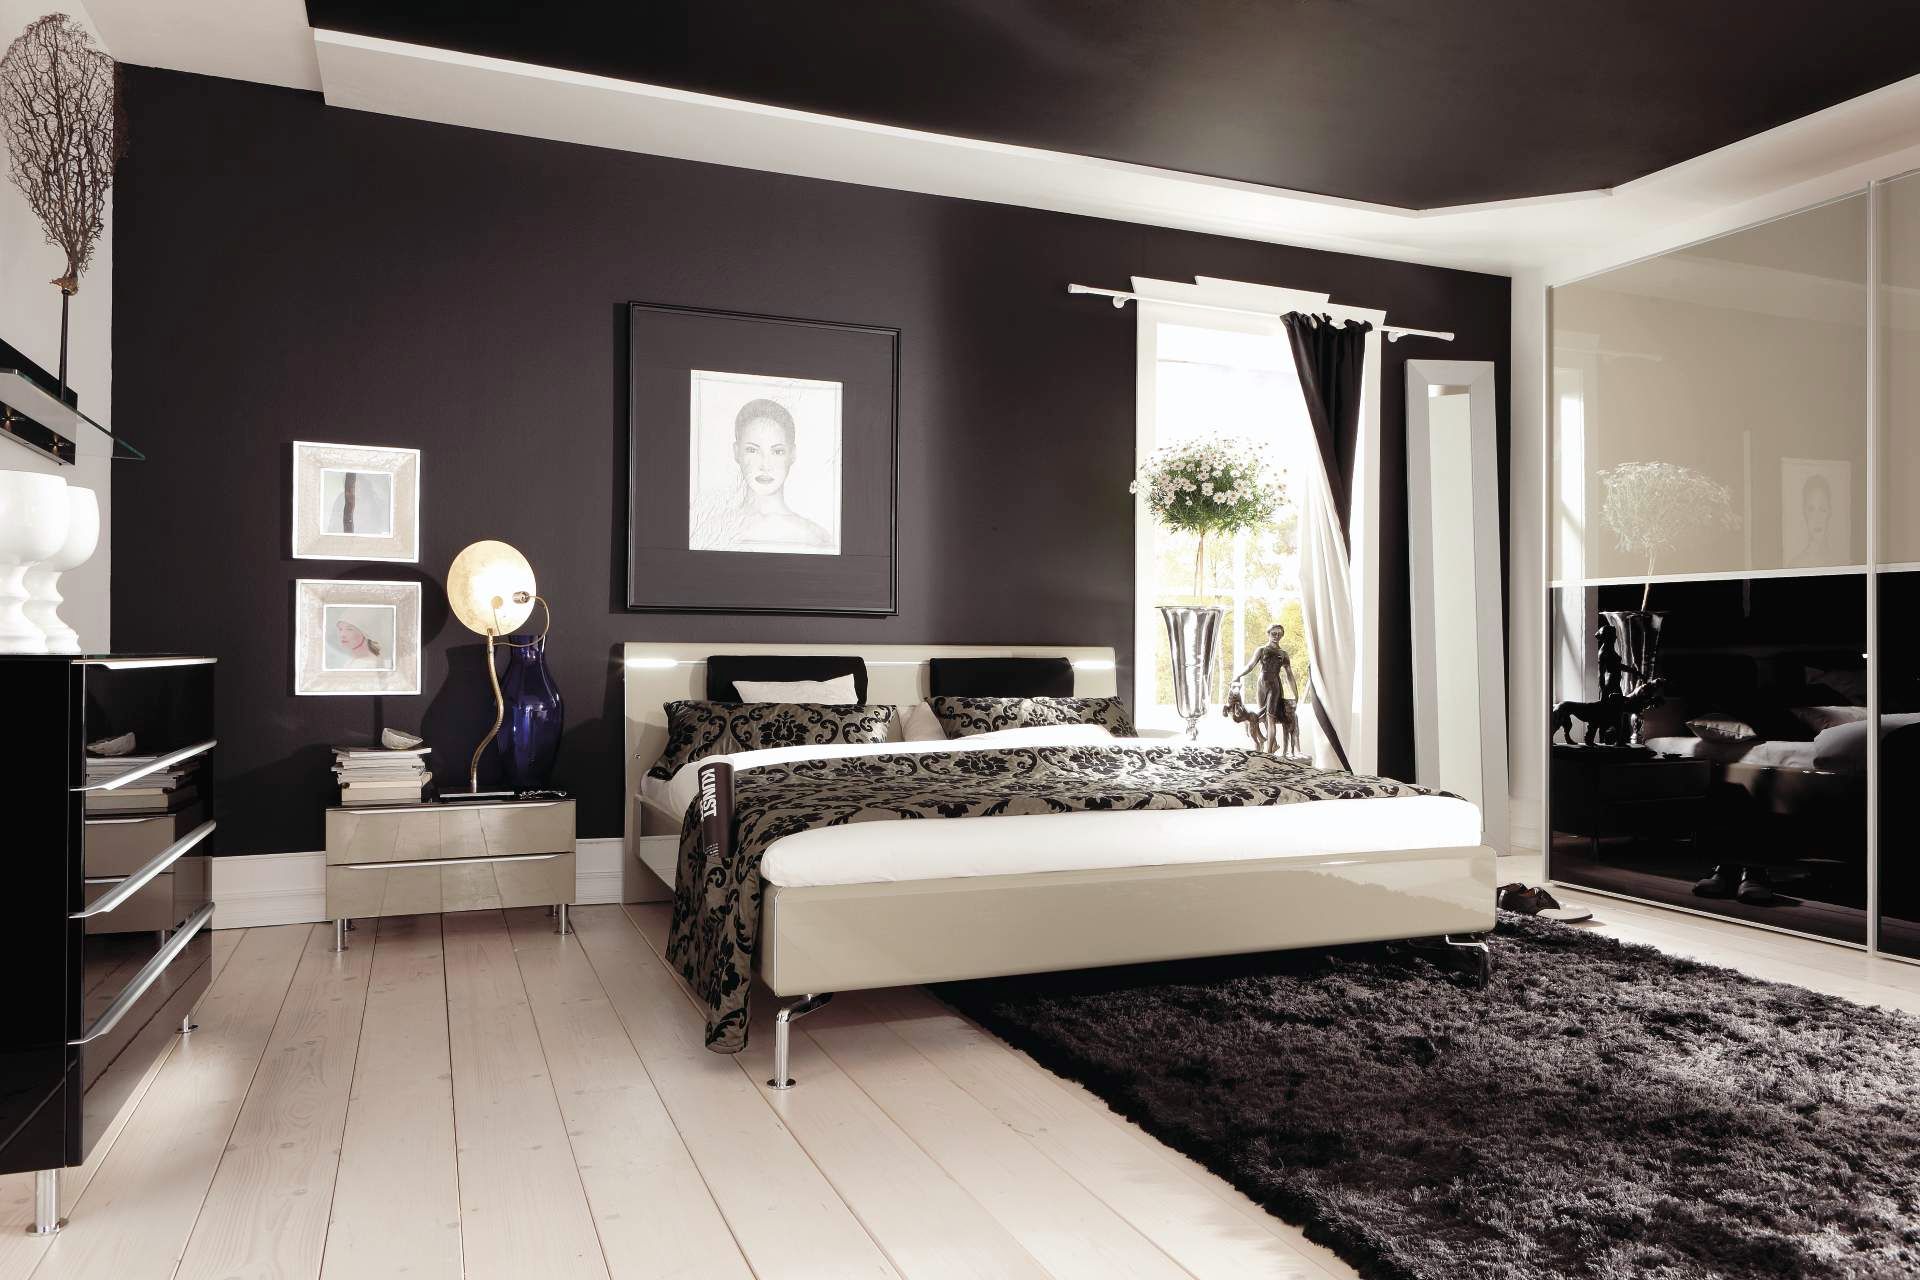 Dazzling Bedroom Contemporary Nightstands